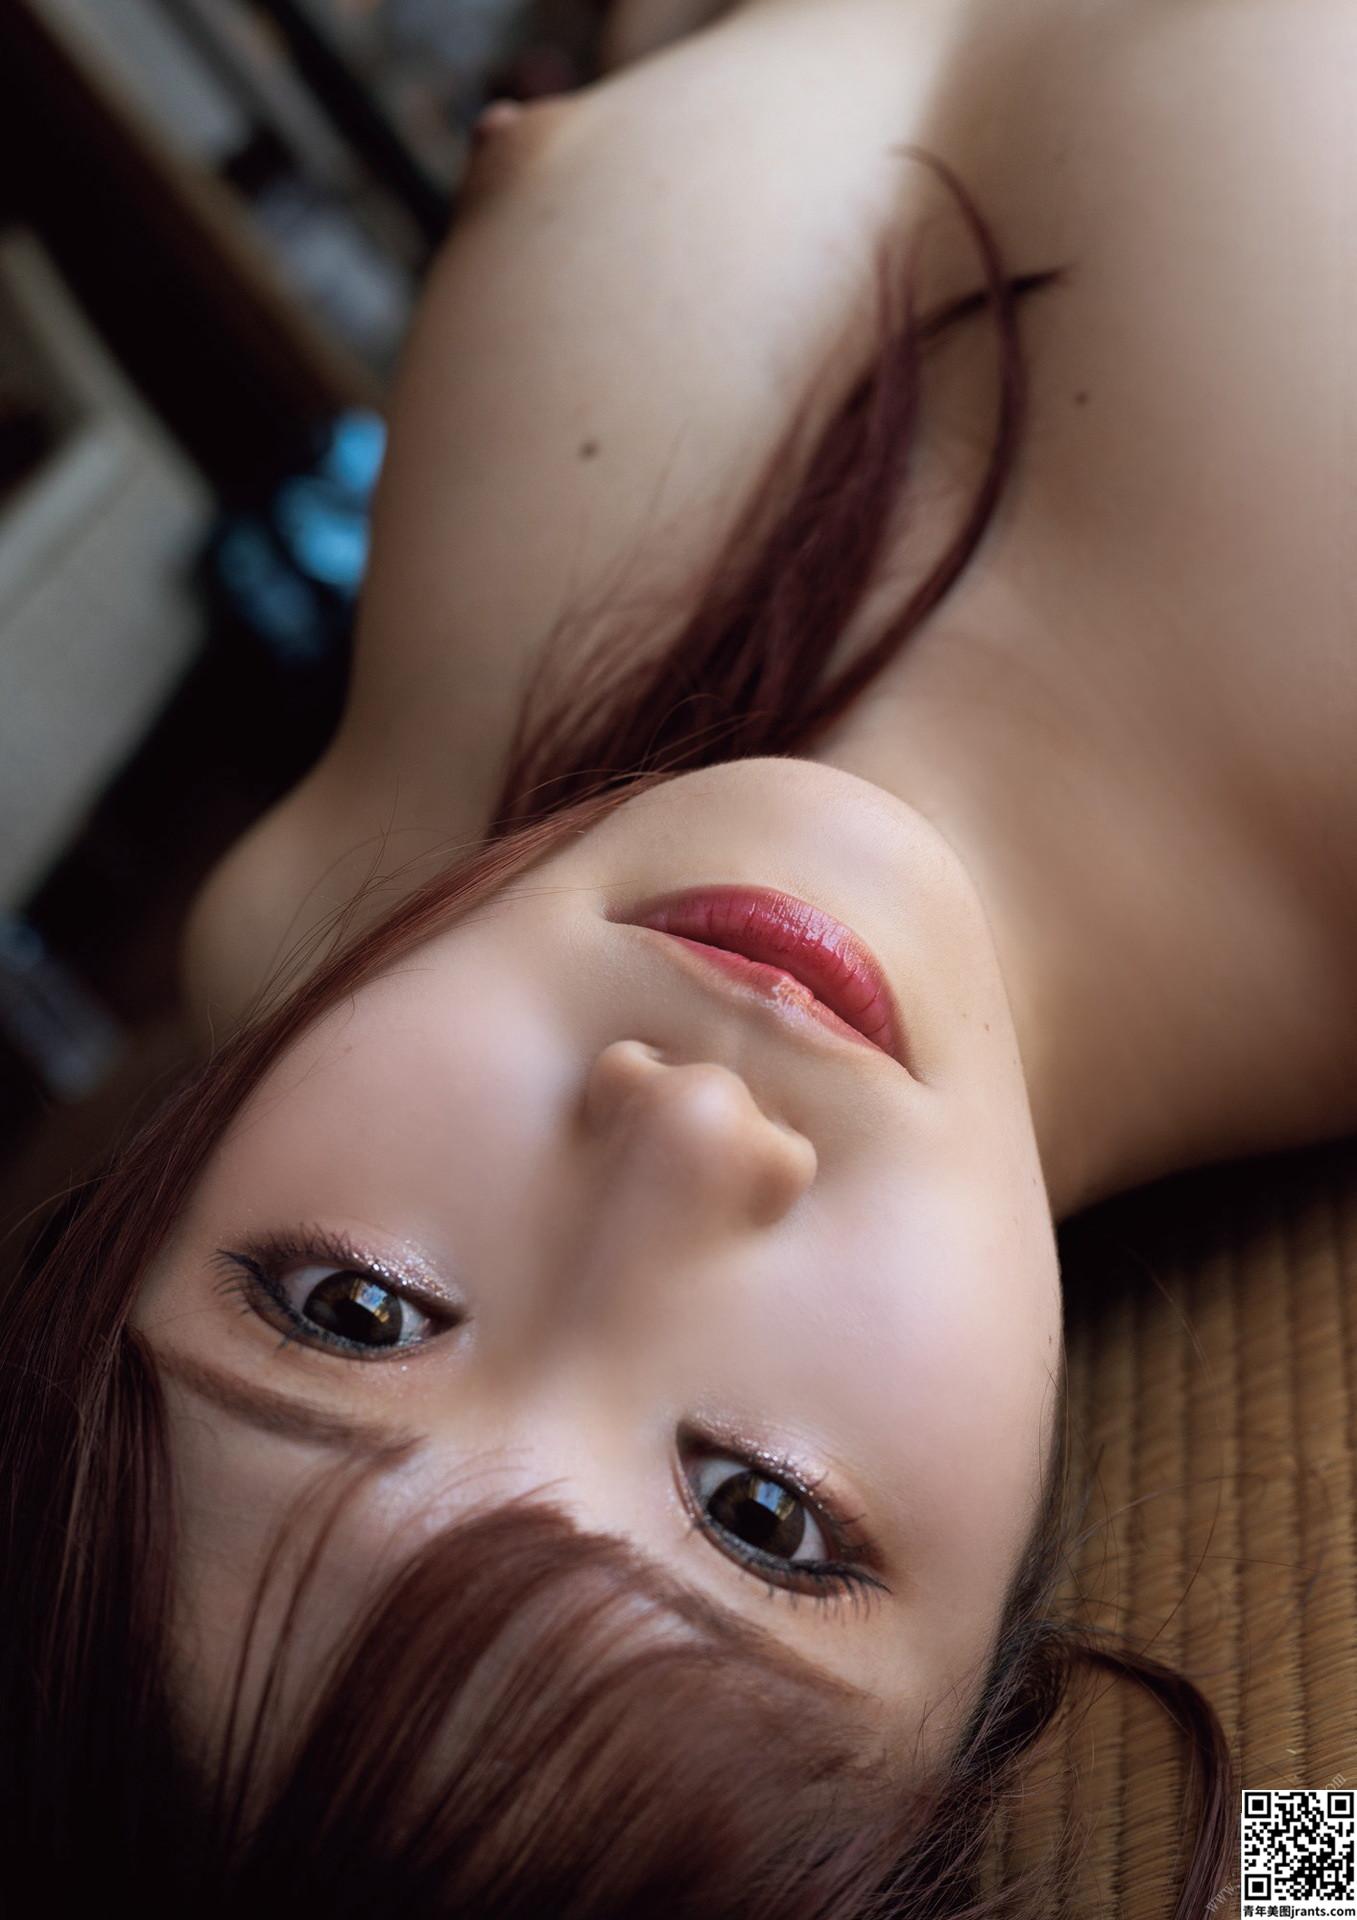 Yamisung – Asuna Mashu Karin (37P